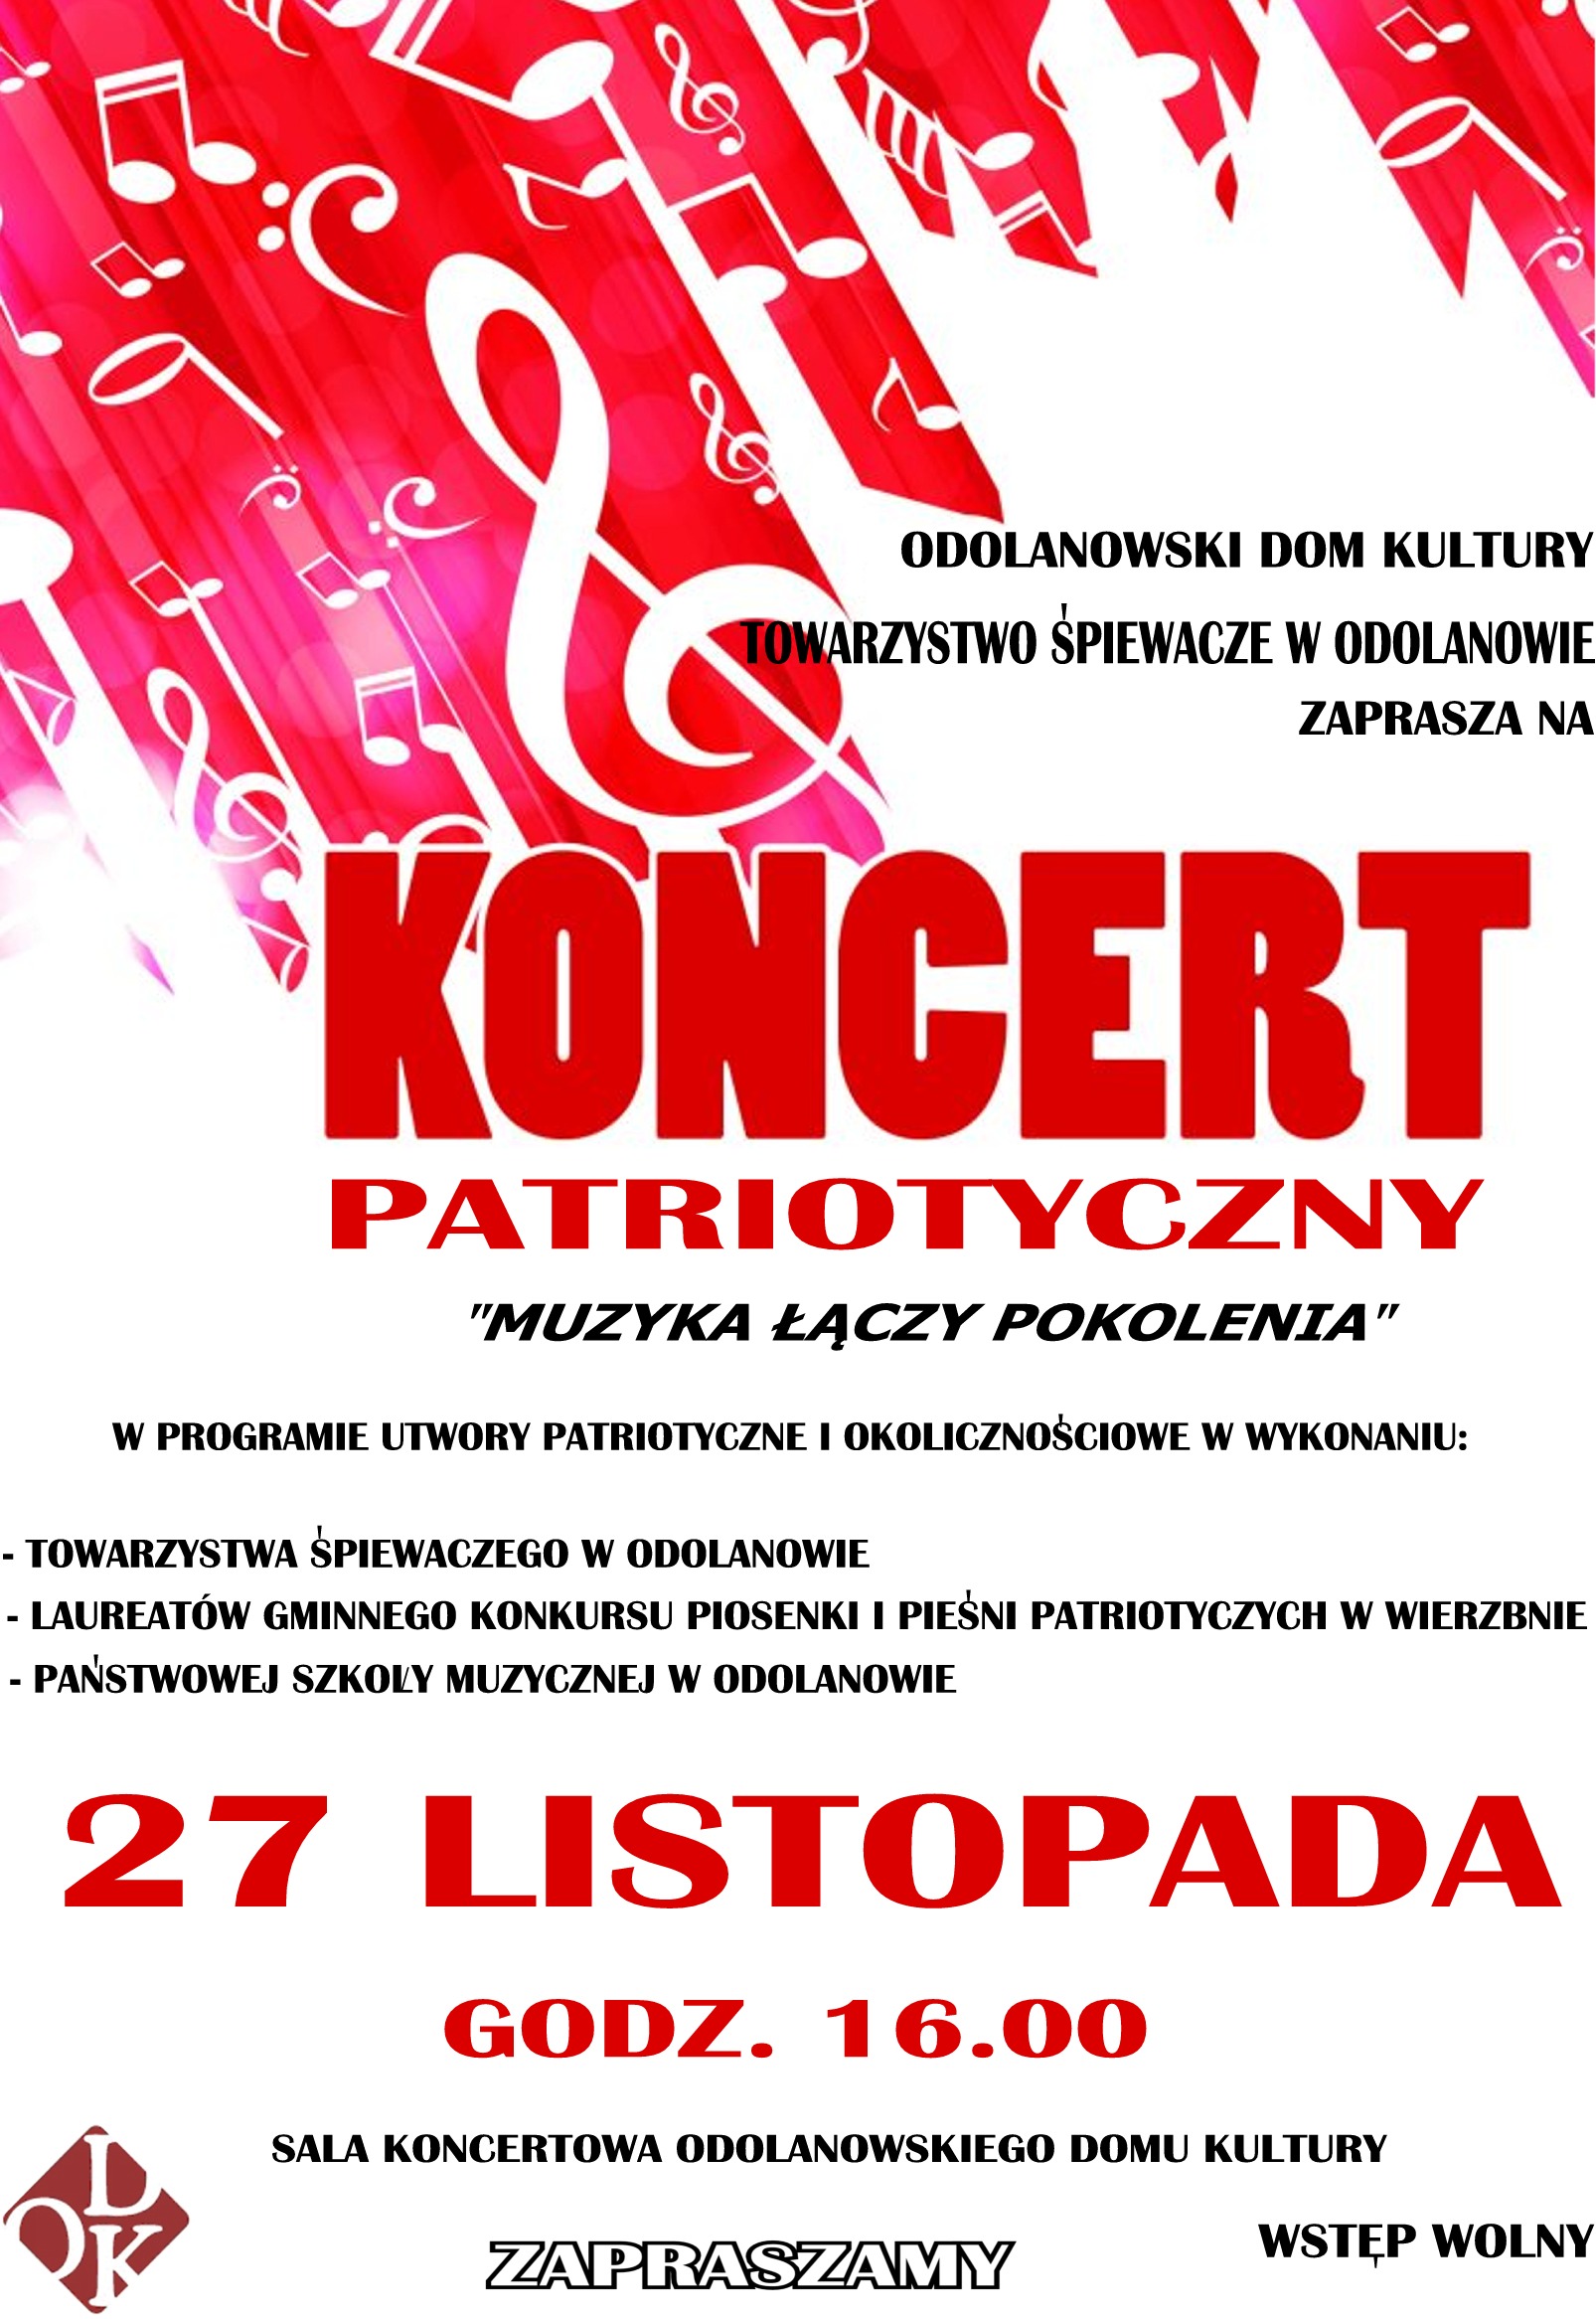 Patriotyczne śpiewanie w ODK. Zapraszamy 27 listopada!